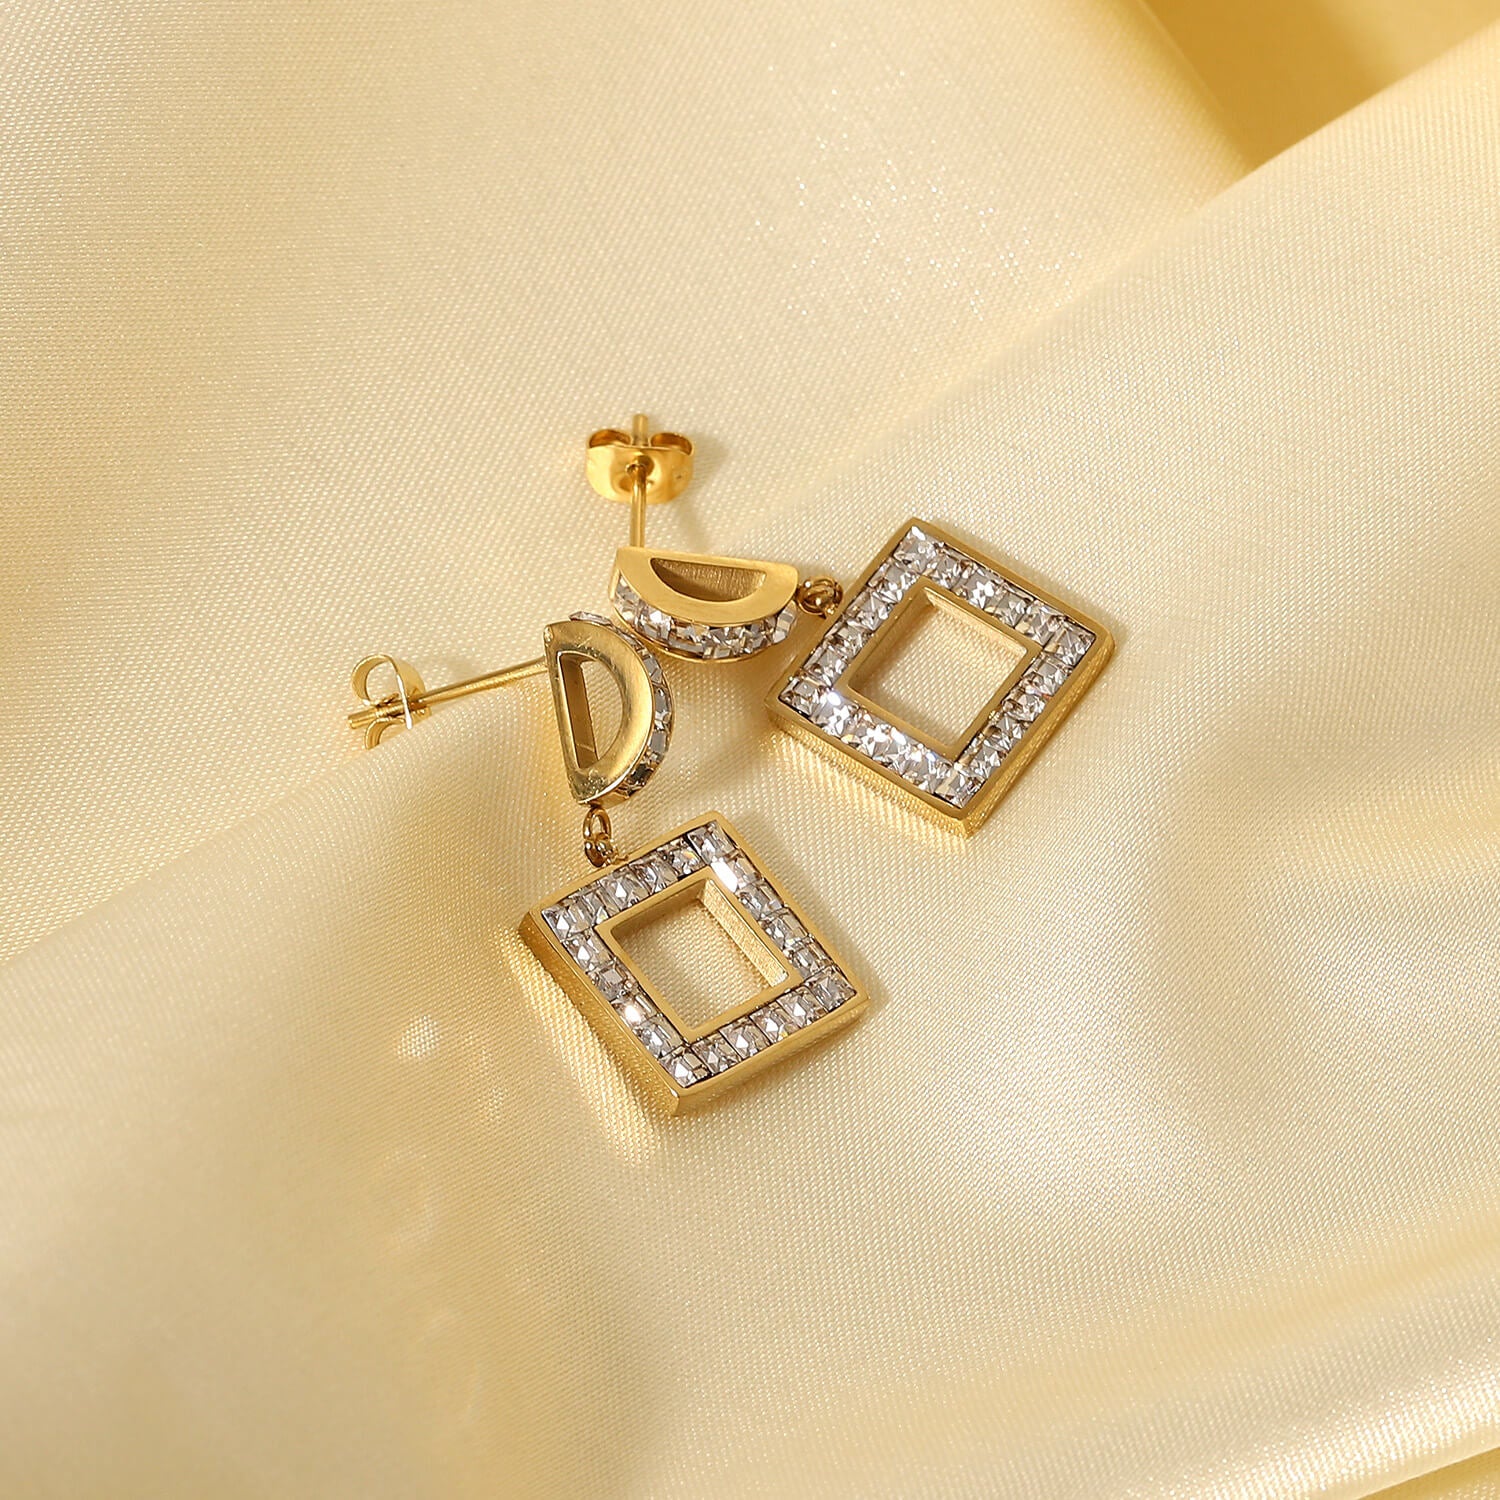 Silvertone Arrowhead Earrings, Southwestern Style Earrings, Gift For Her,  Southwestern Jewelry, Girlfriend Gift, Wife Jewelry Gift Earrings